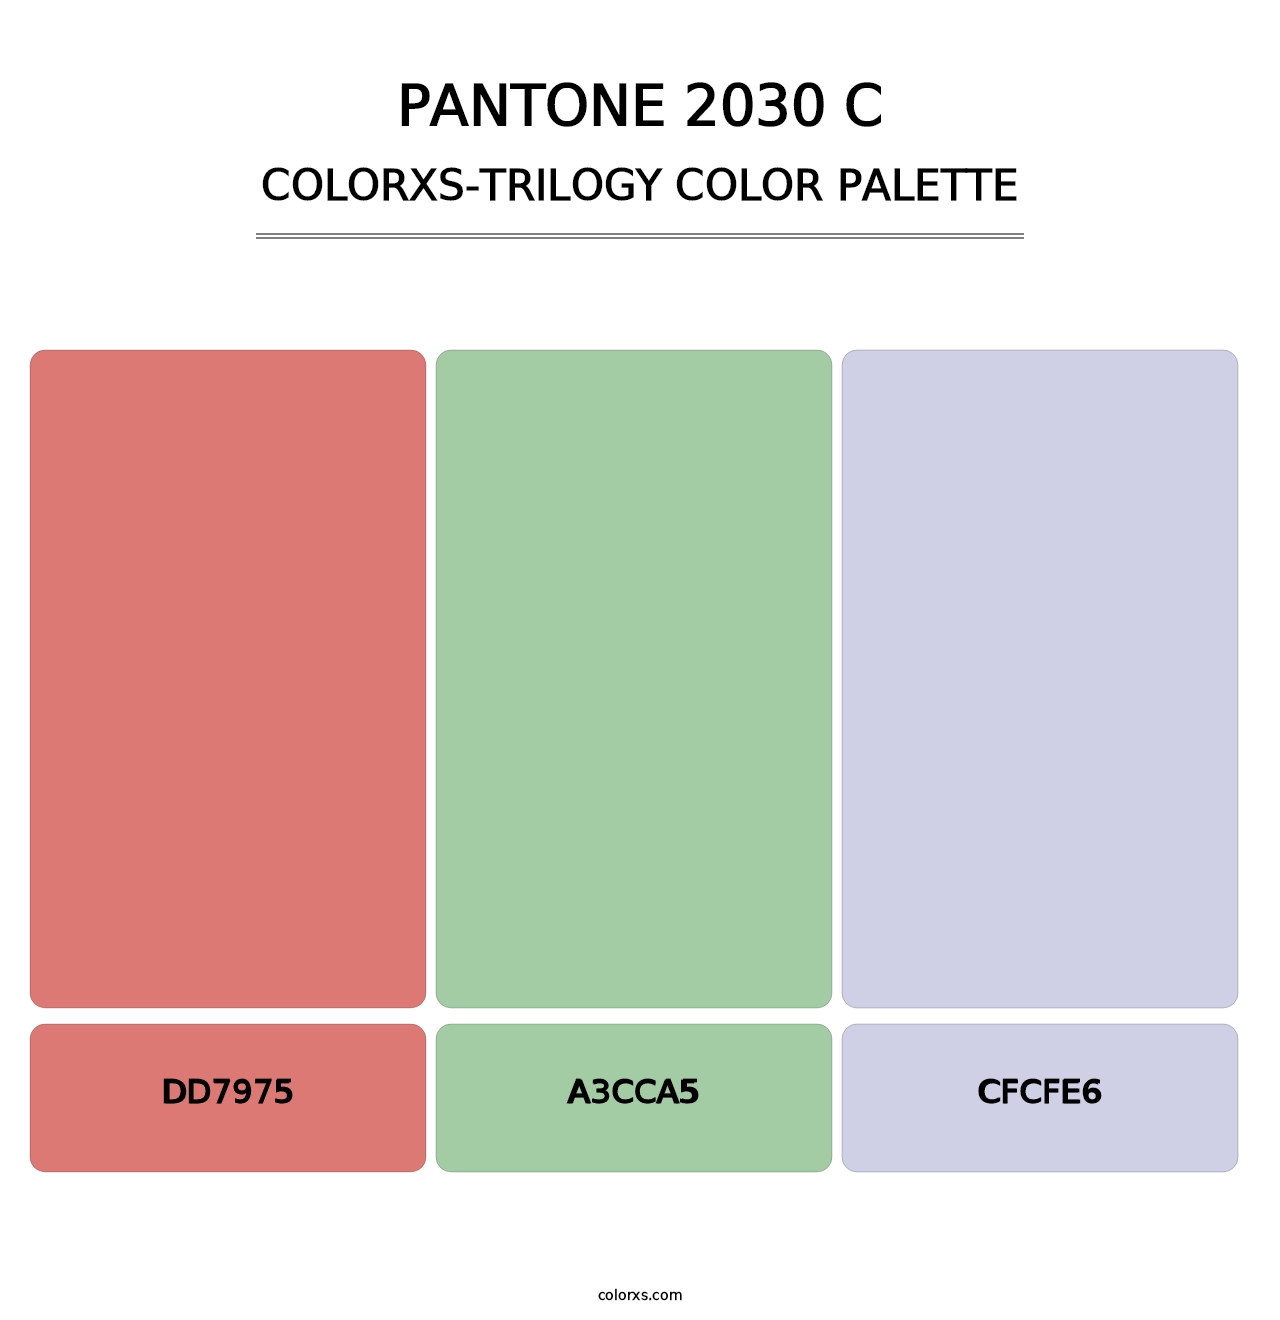 PANTONE 2030 C - Colorxs Trilogy Palette